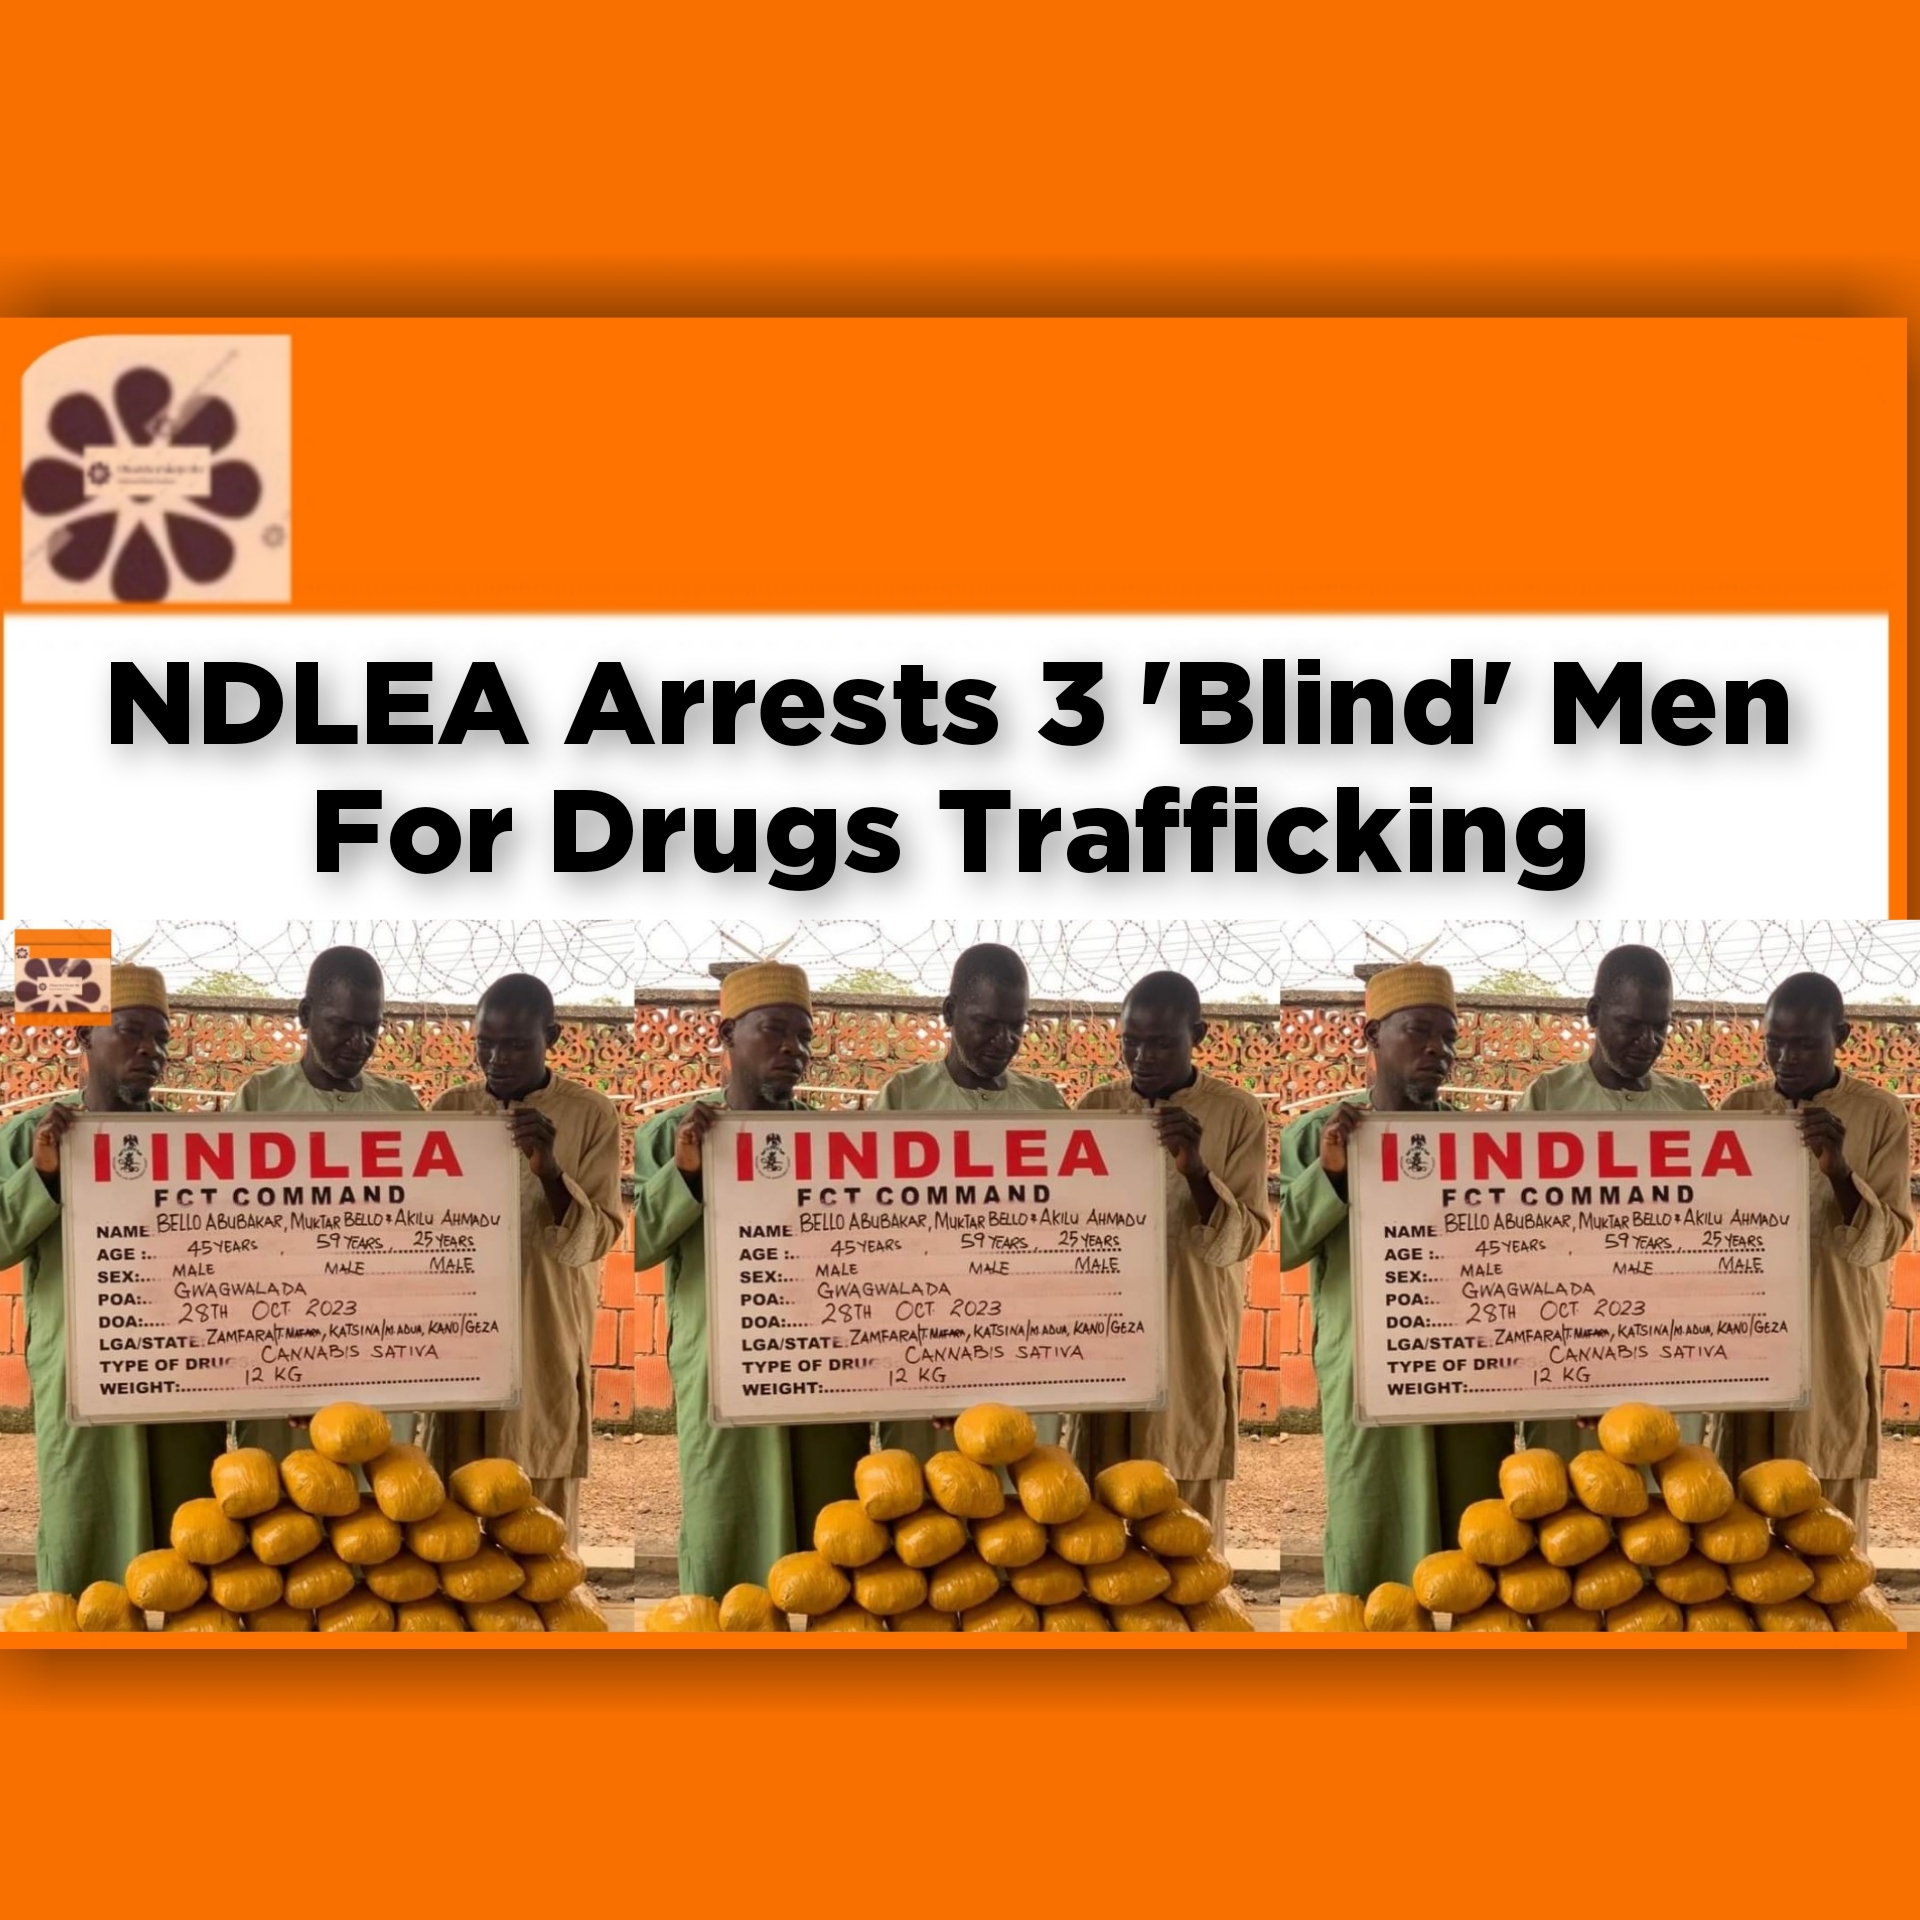 NDLEA Arrests 3 'Blind' Men For Drugs Trafficking ~ OsazuwaAkonedo #Blindmen #NDLEA